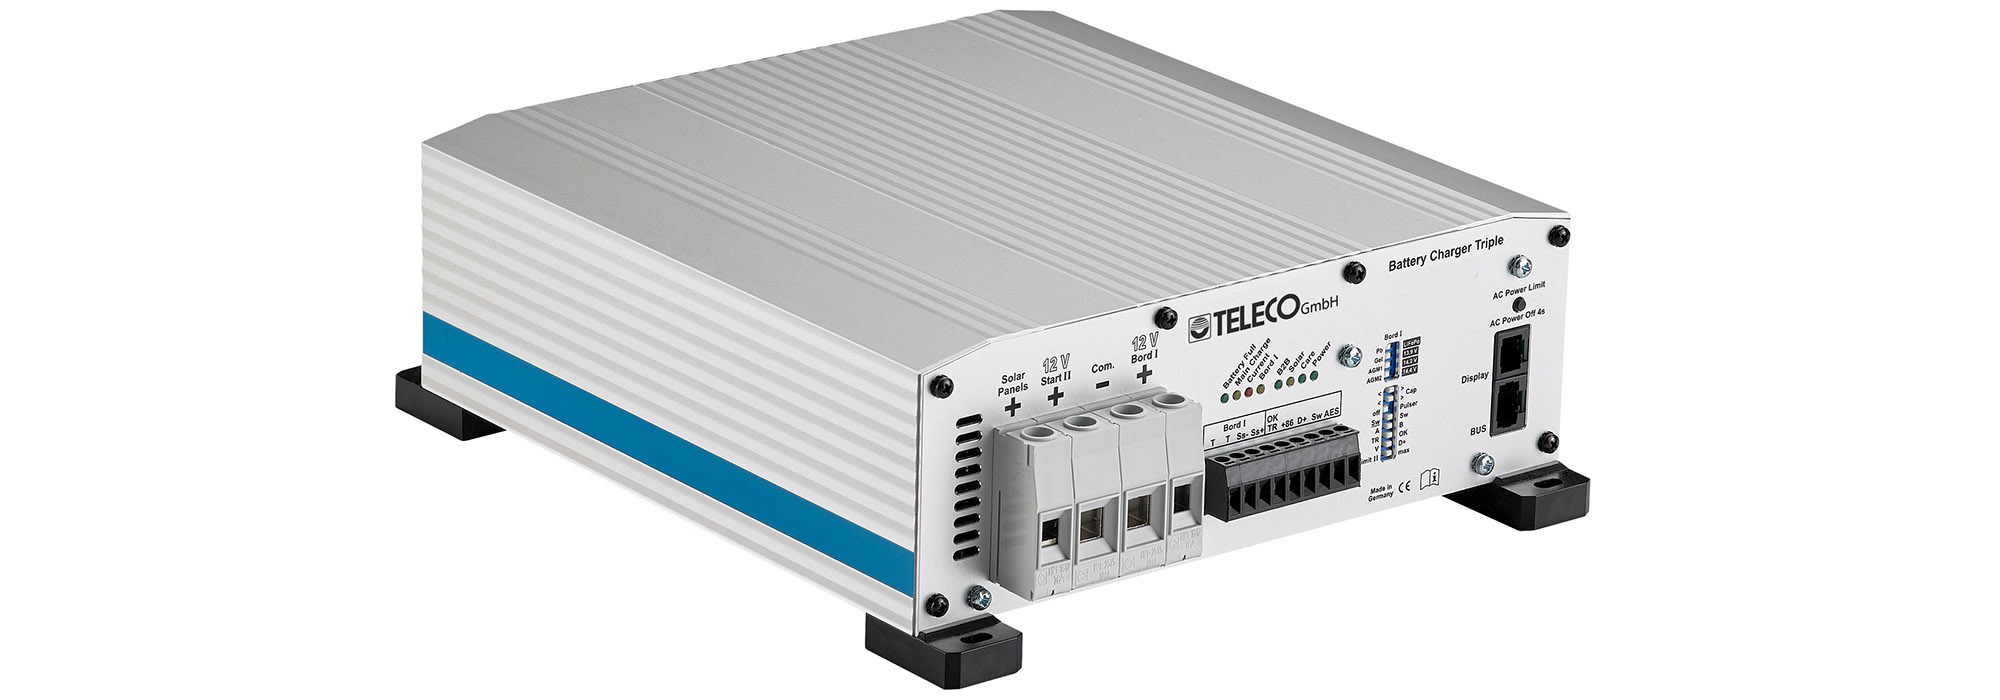 Das intelligente Teleco-Ladegerät TBC3i PRO sorgt für eine effiziente Ladung und eine lange Haltbarkeit der Batterien